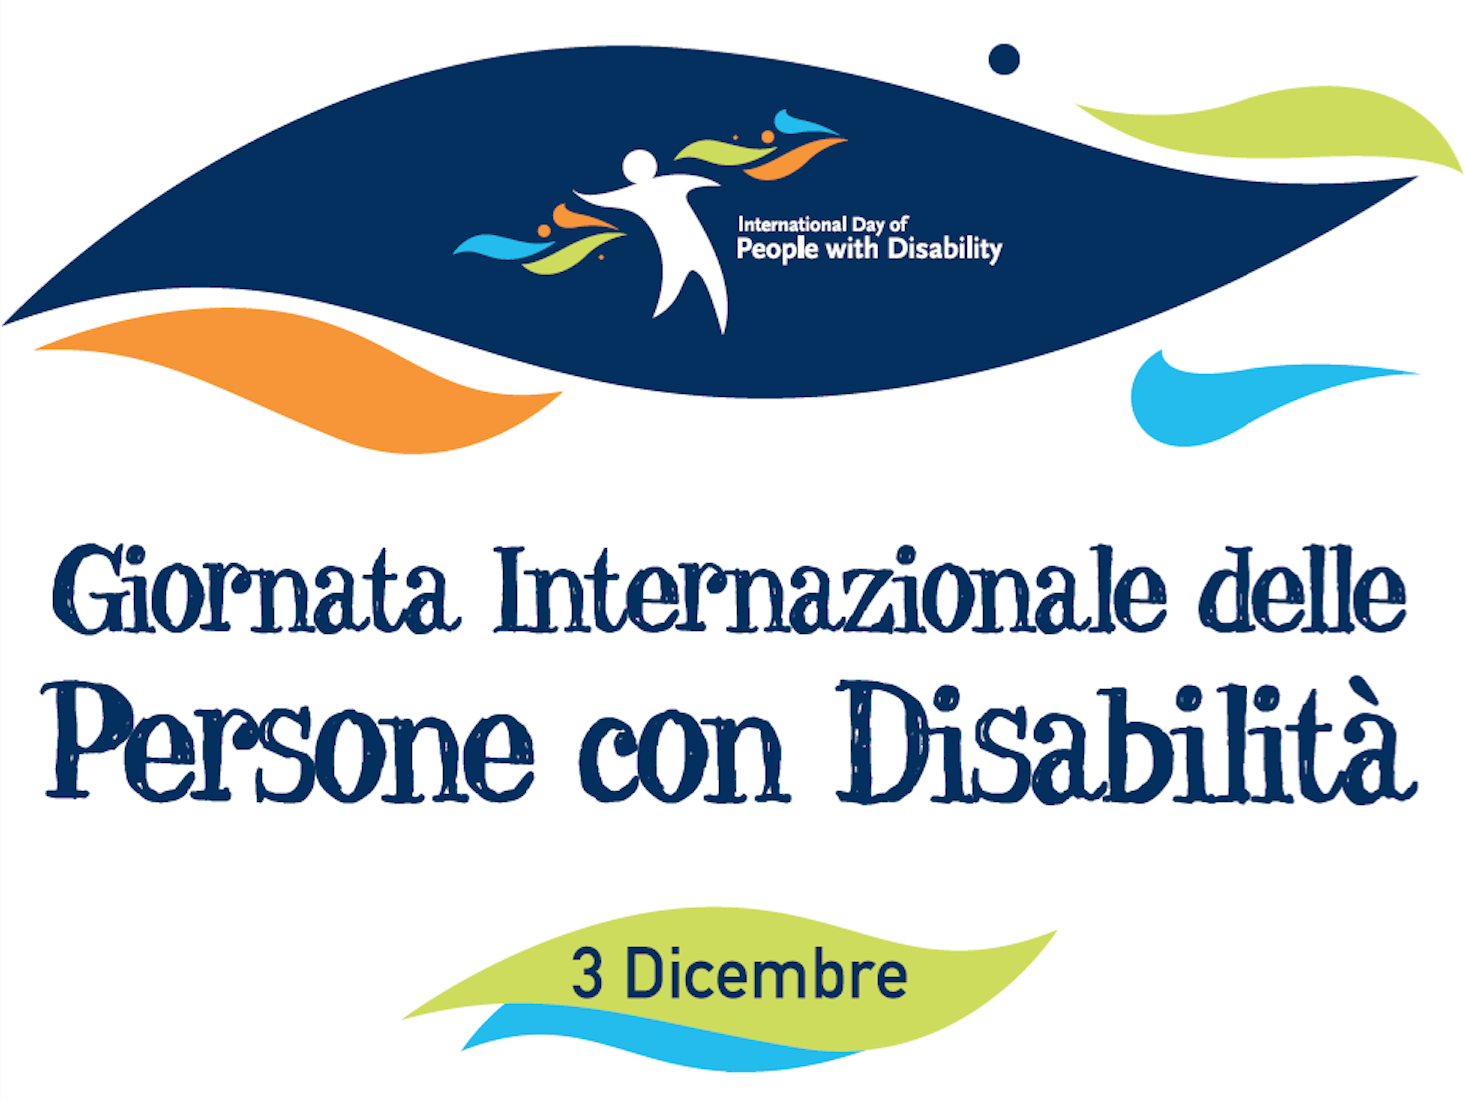 Featured image for “3 Dicembre: Giornata Internazionale delle Persone con Disabilità. L’edizione 2020 si svolge interamente on-line”